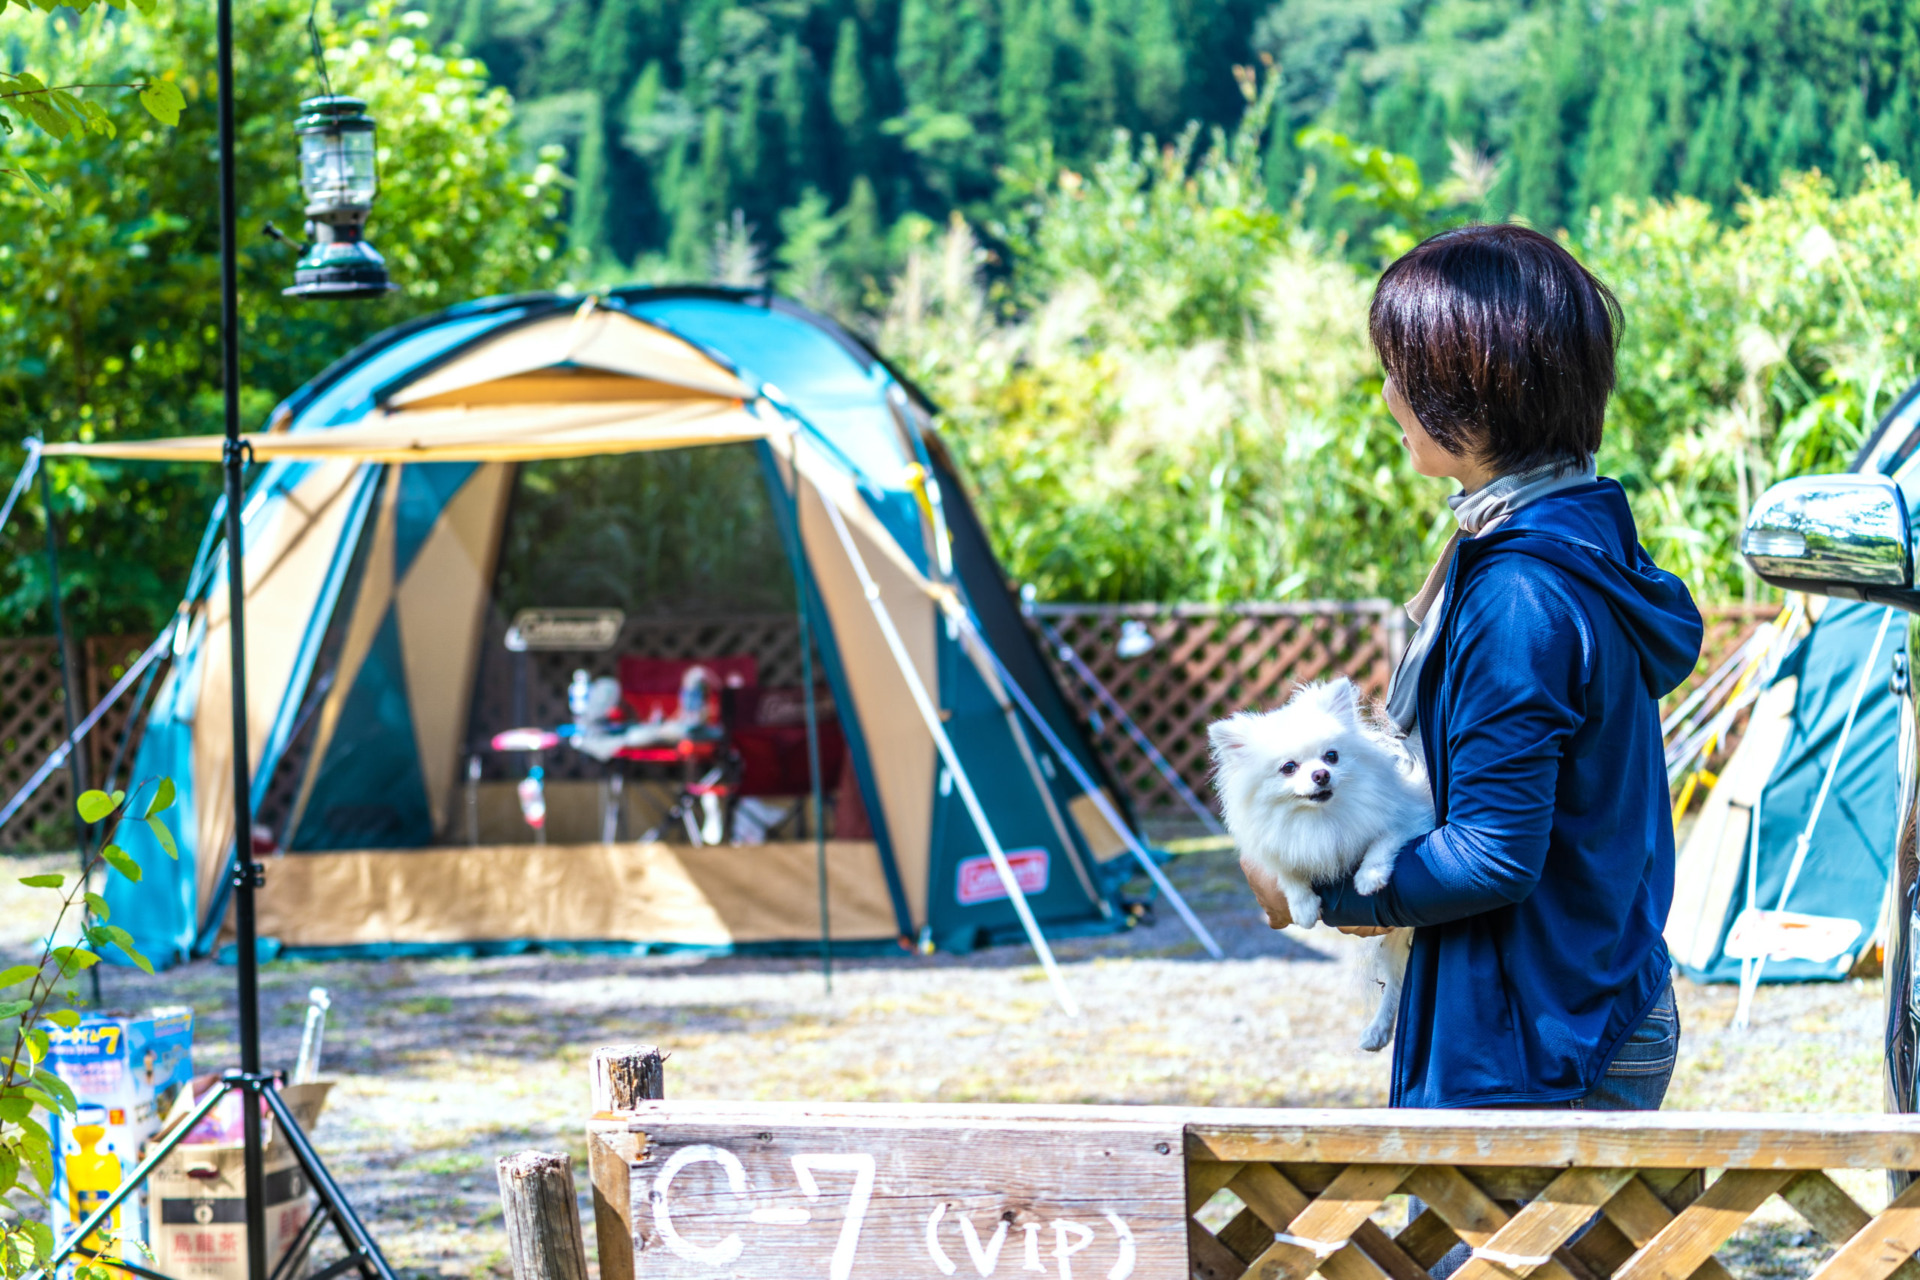 N.E.W Okunagara Campsite & WANKO, a campsite for dog lovers image